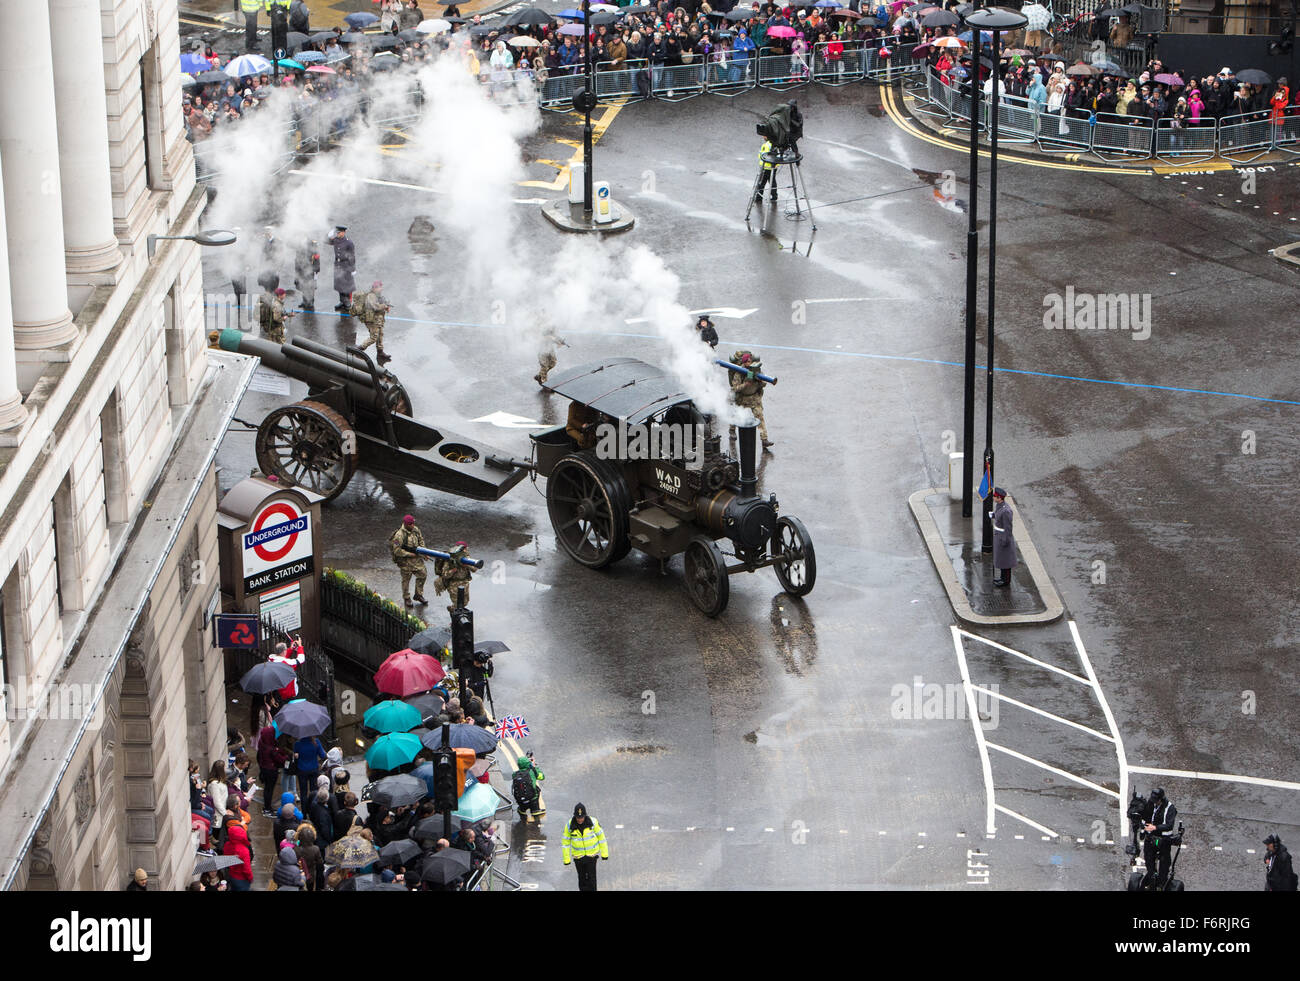 El señor Alcalde es mostrar los desfiles por las calles de la ciudad de Londres, siguiendo una tradición que ha perdurado durante 800 años. Foto de stock